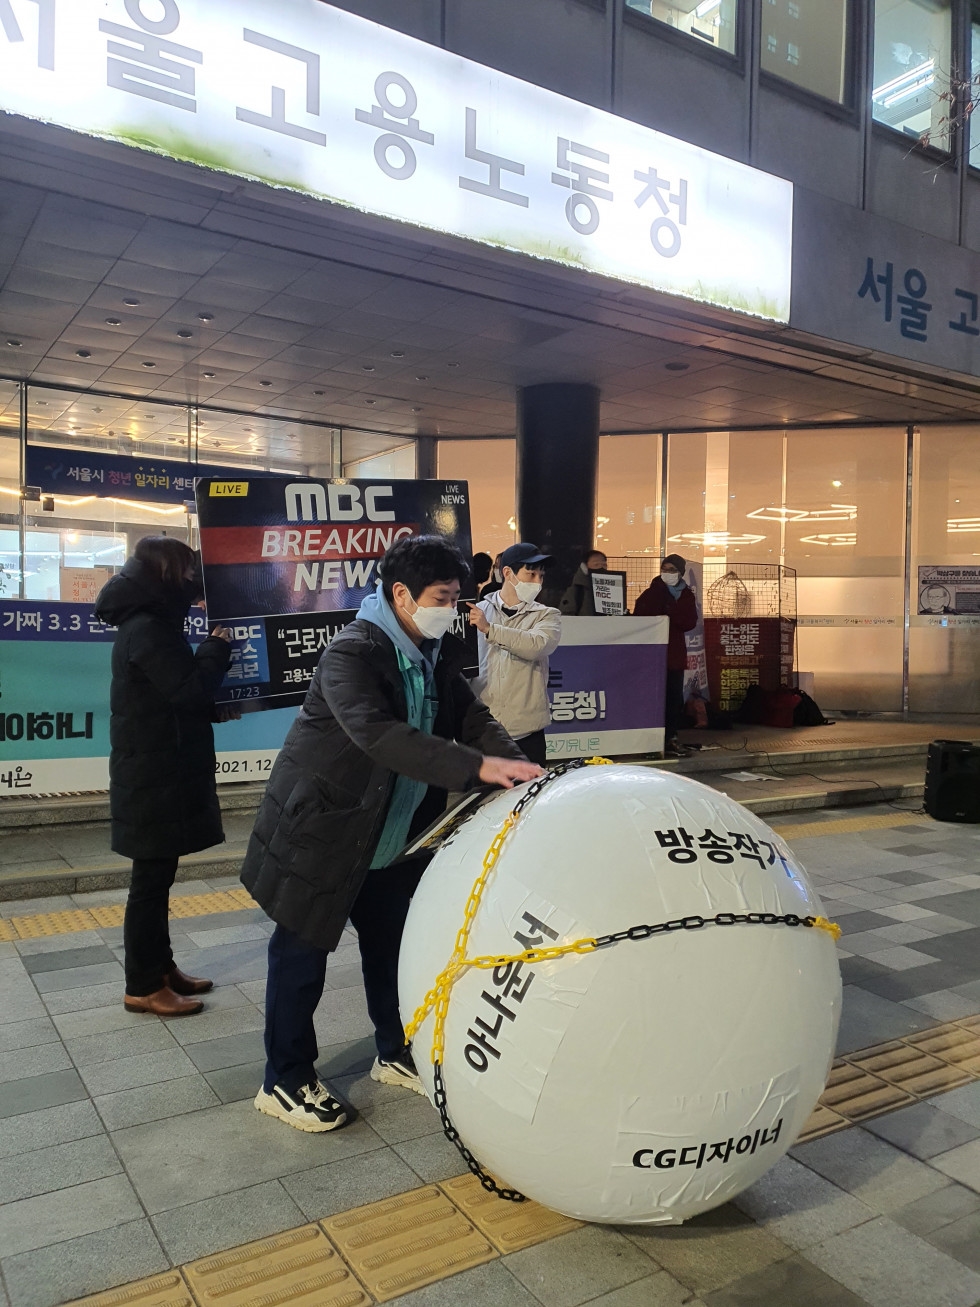 2021년 12월 22일 권리찾기유니온이 서울지방고용노동청 앞에서 '가짜 3.3 방송노동자 근로자지위확인 공동진정 특별접수 기자회견'을 열고 관련 퍼포먼스를 열고 있다.